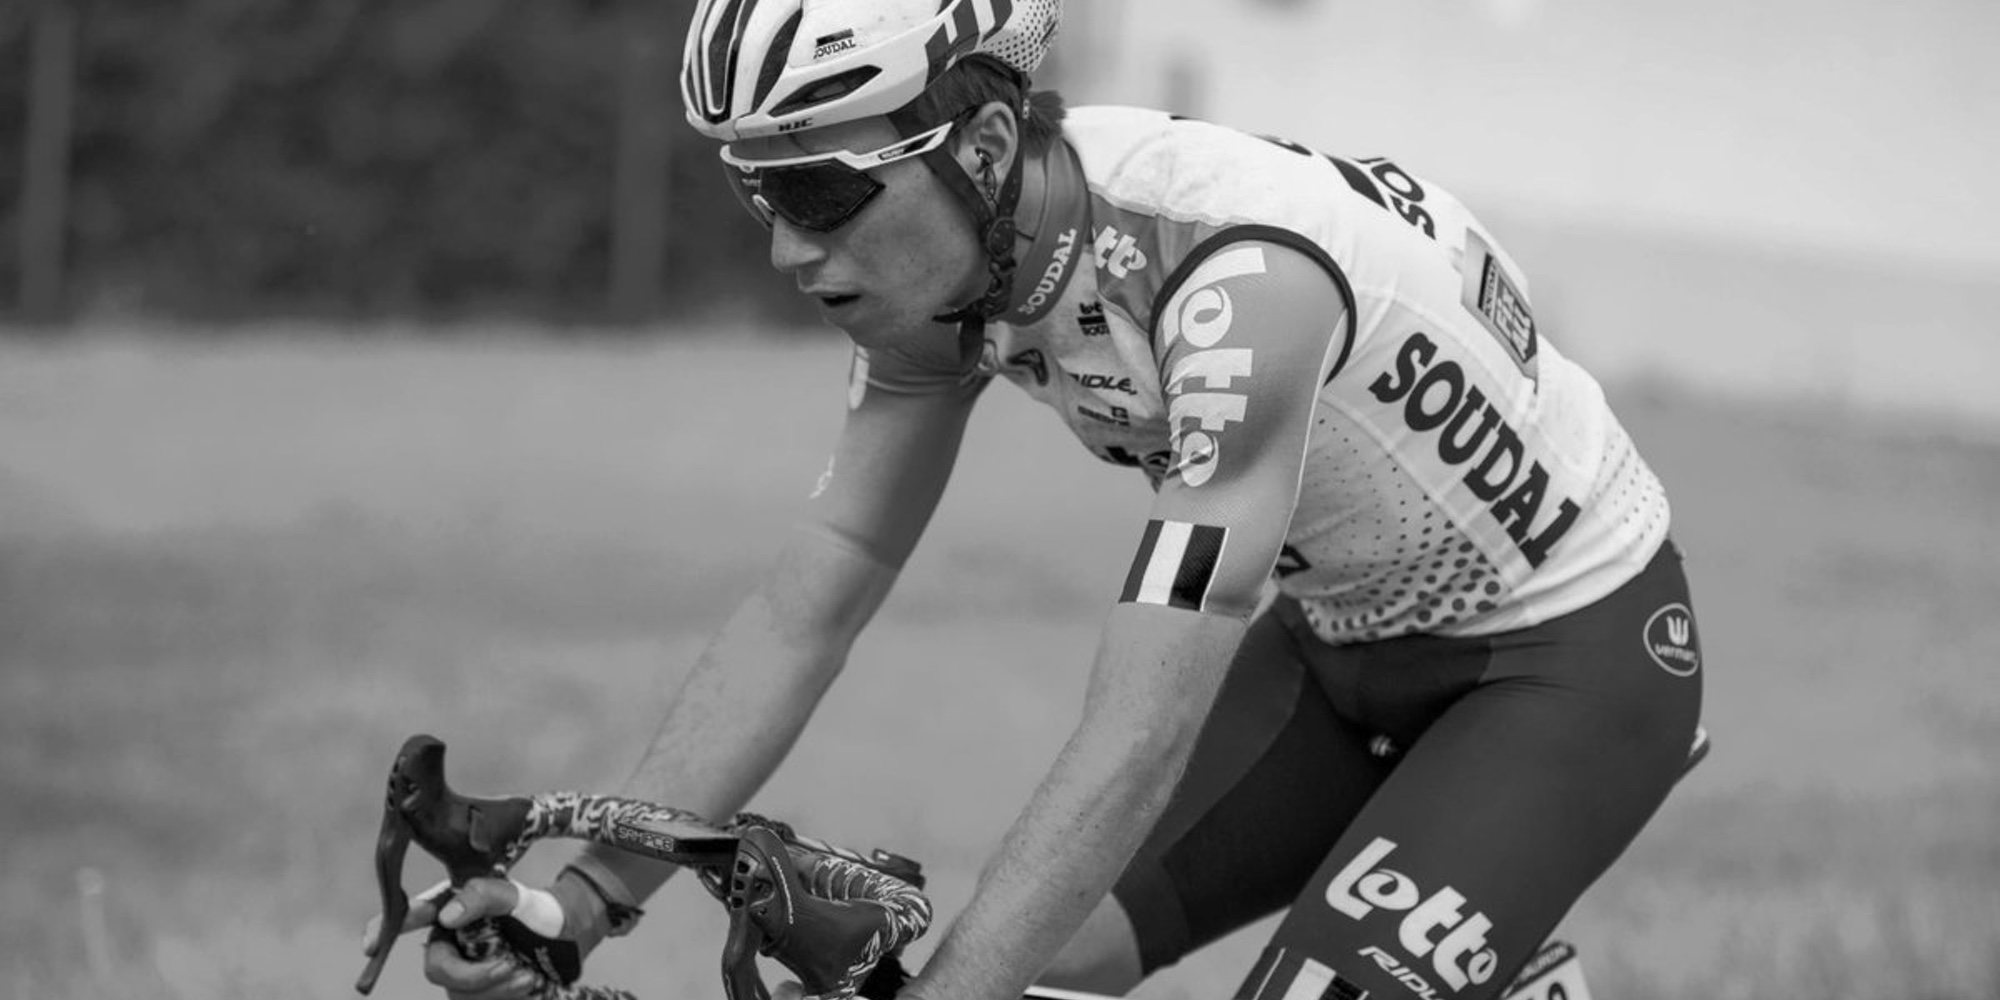 Muere el ciclista Lambrecht tras un accidente en la Vuelta Polonia con tan solo 22 años